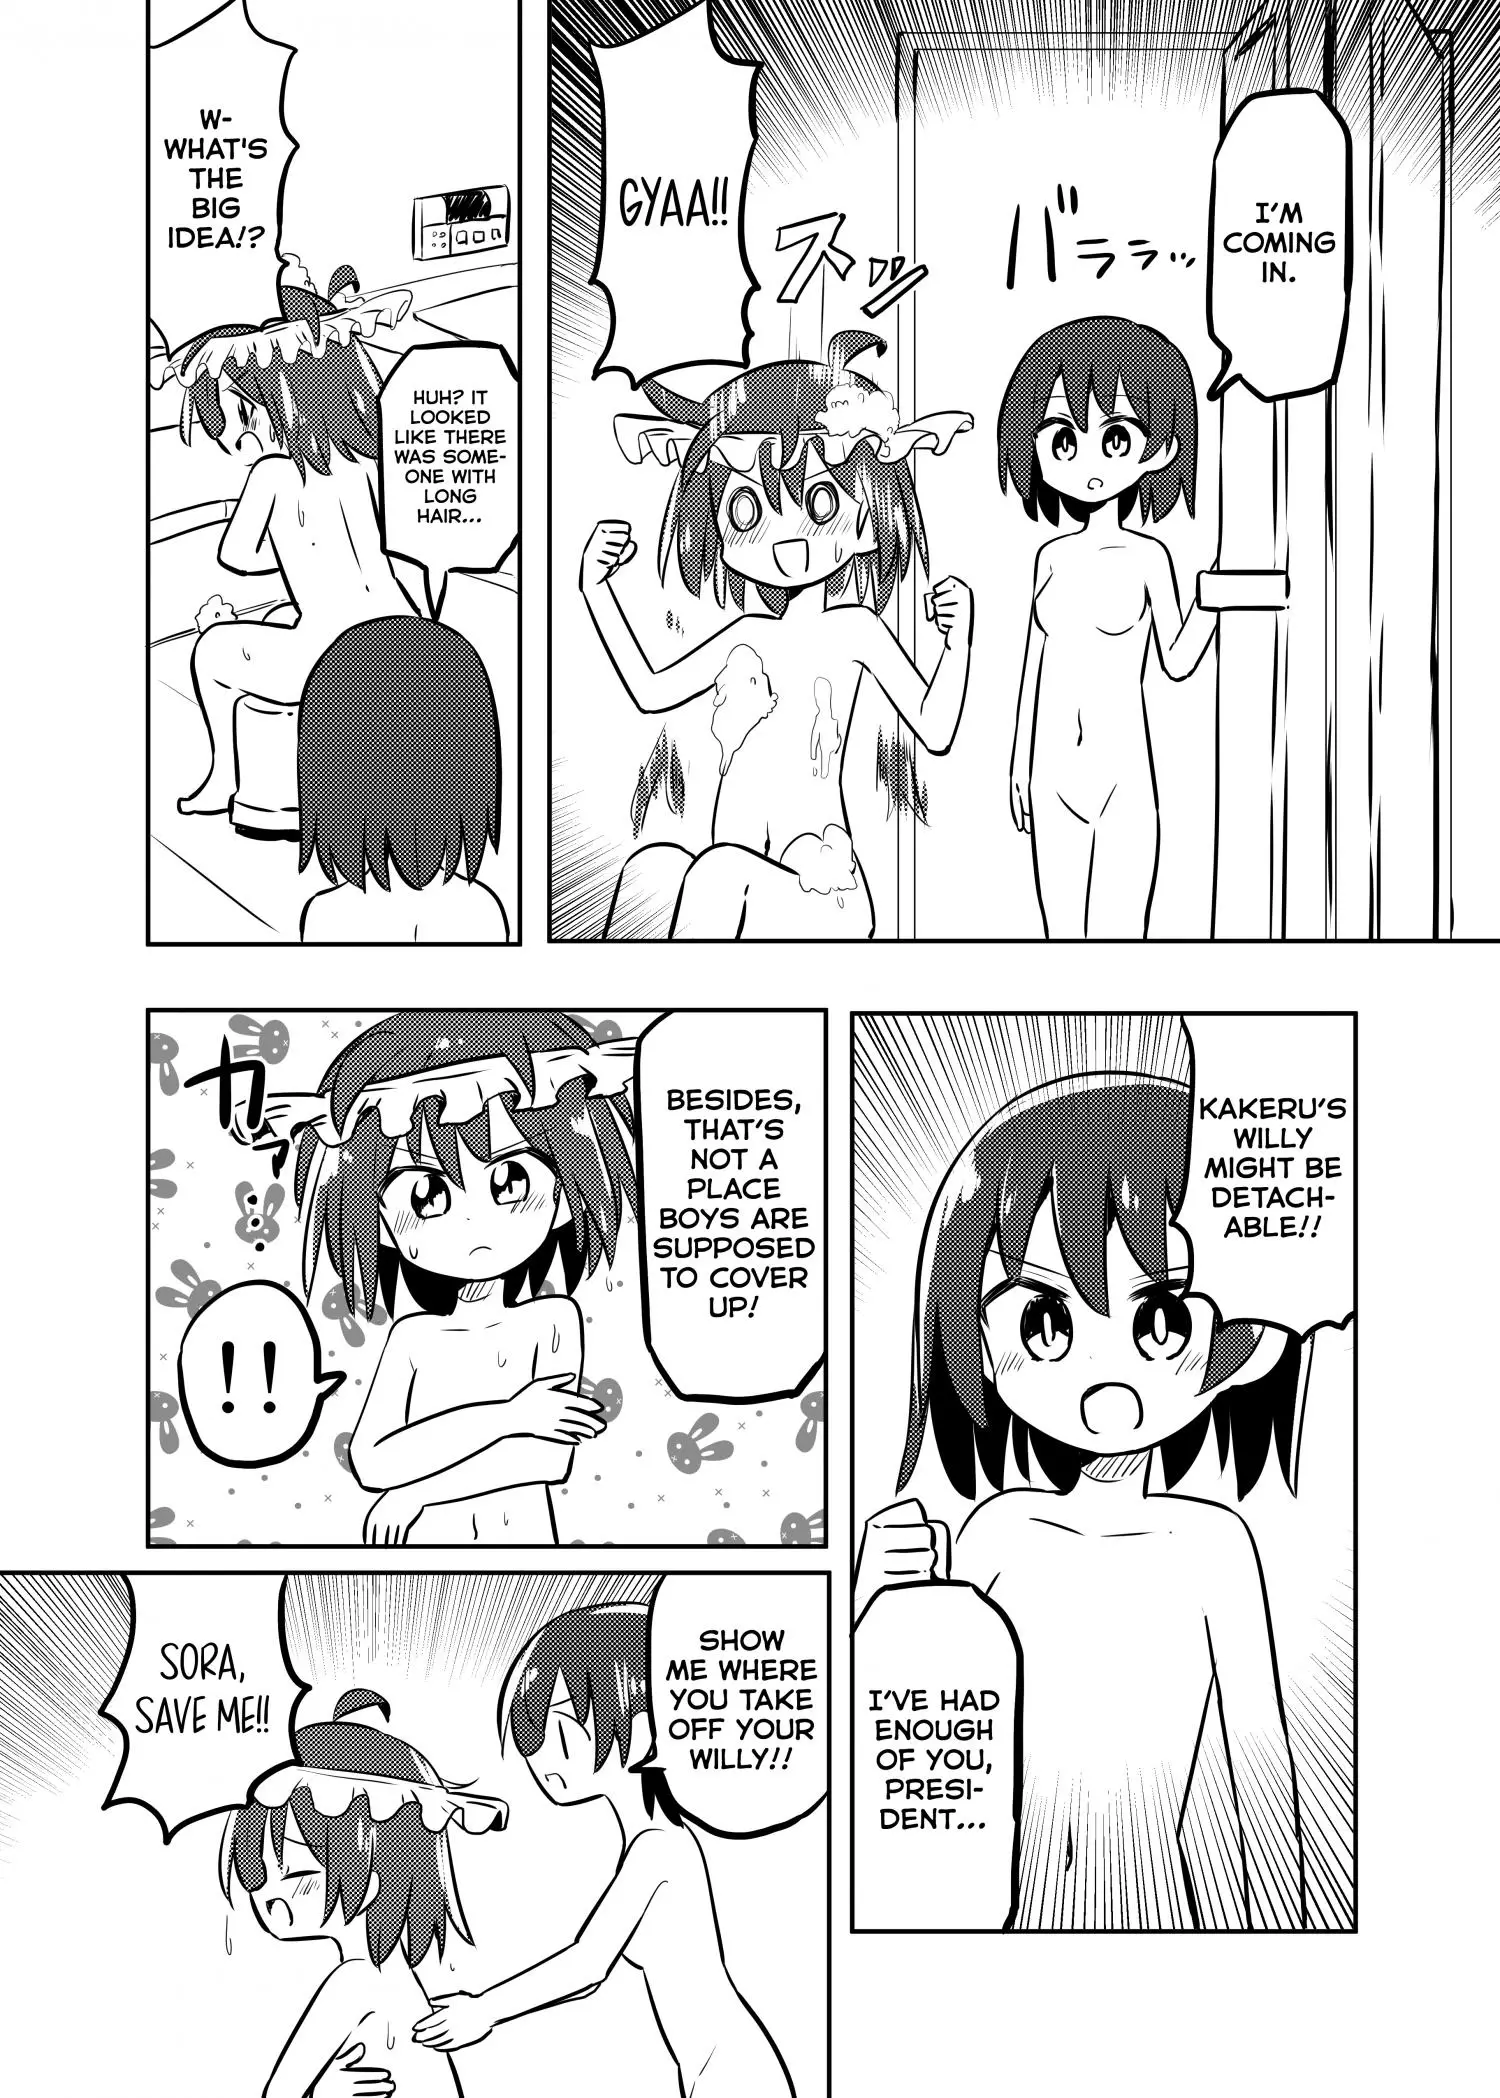 Magical Girl Kakeru - 26 page 7-6c7f38b2